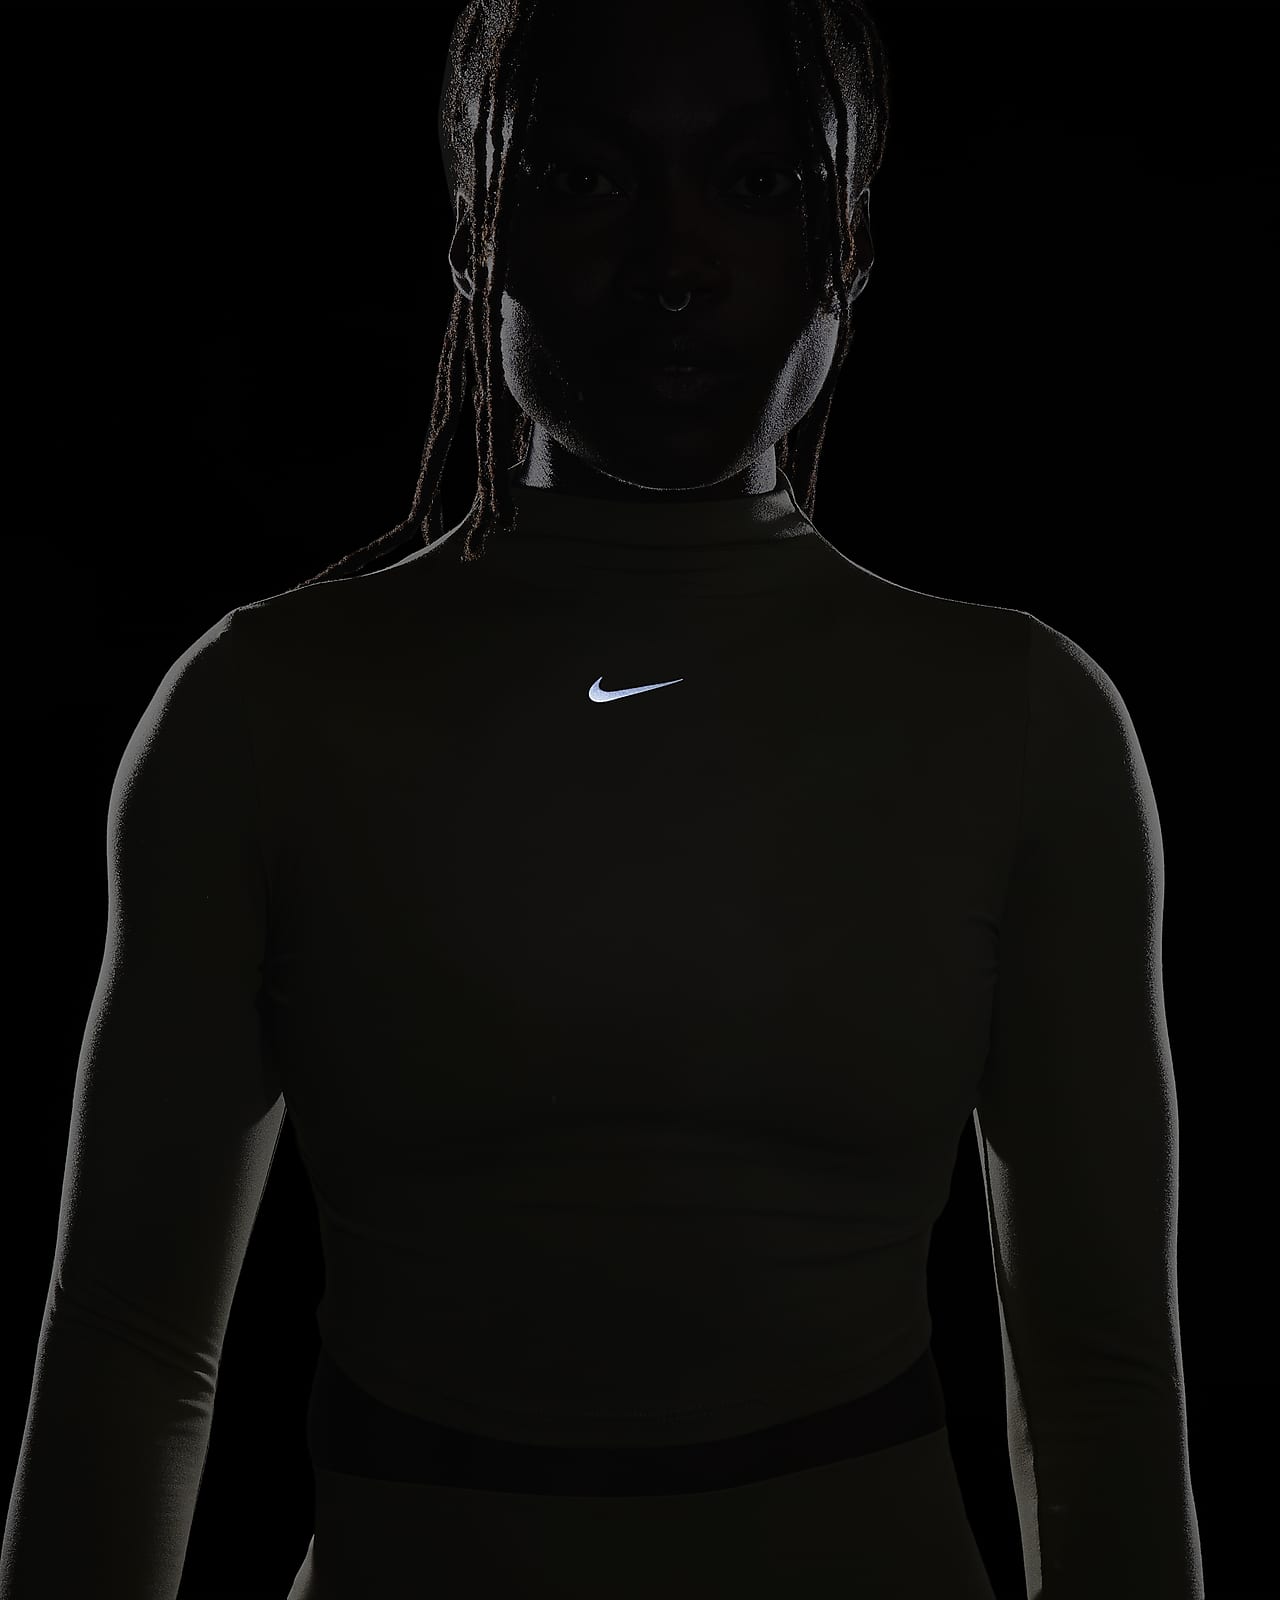 Nike Nike Dri-fit One Luxe Women's Black/metallic Gold